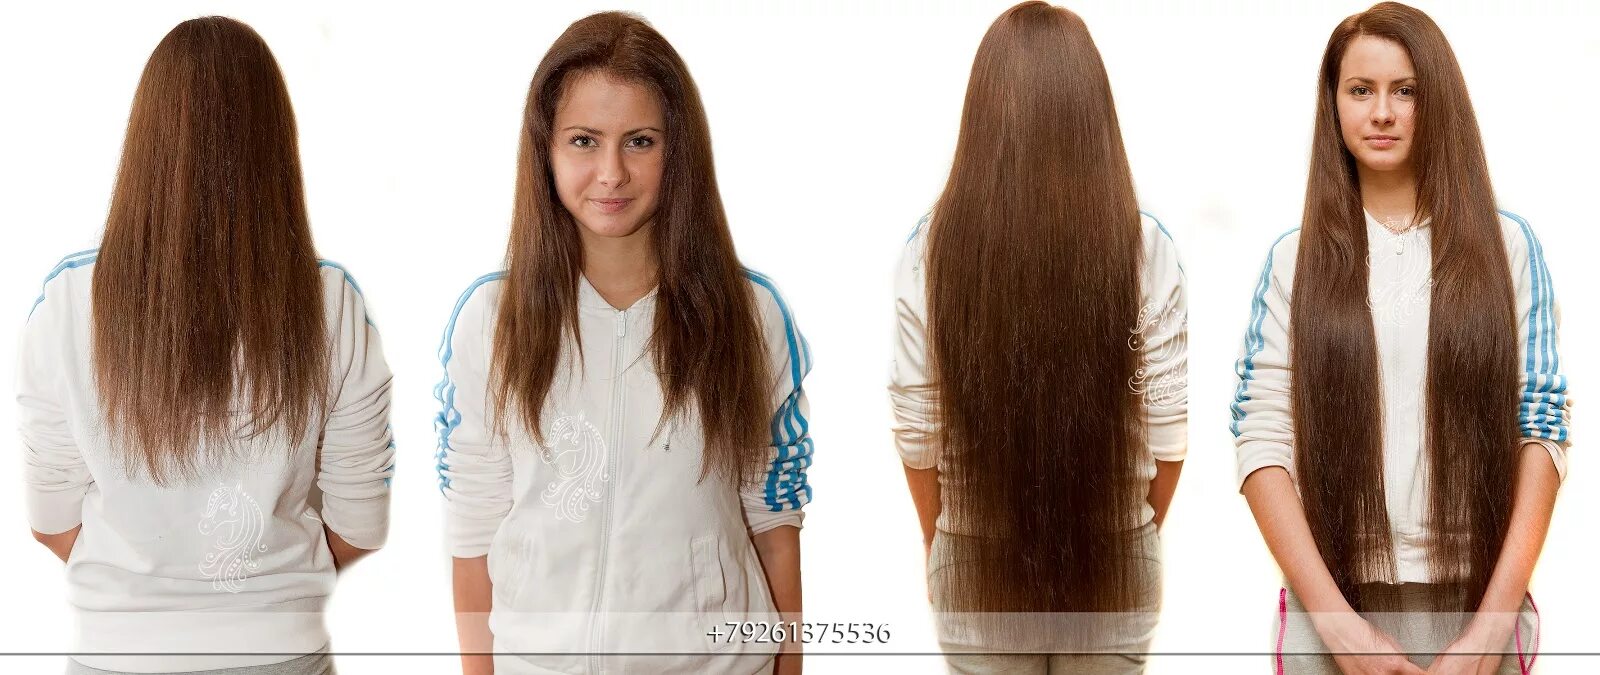 Плюсы и минусы нарощенных. Наращивание волос длинные. Наращивание волос вид спереди. Нарощенные волосы вид спереди. Нарастить длинные волосы.